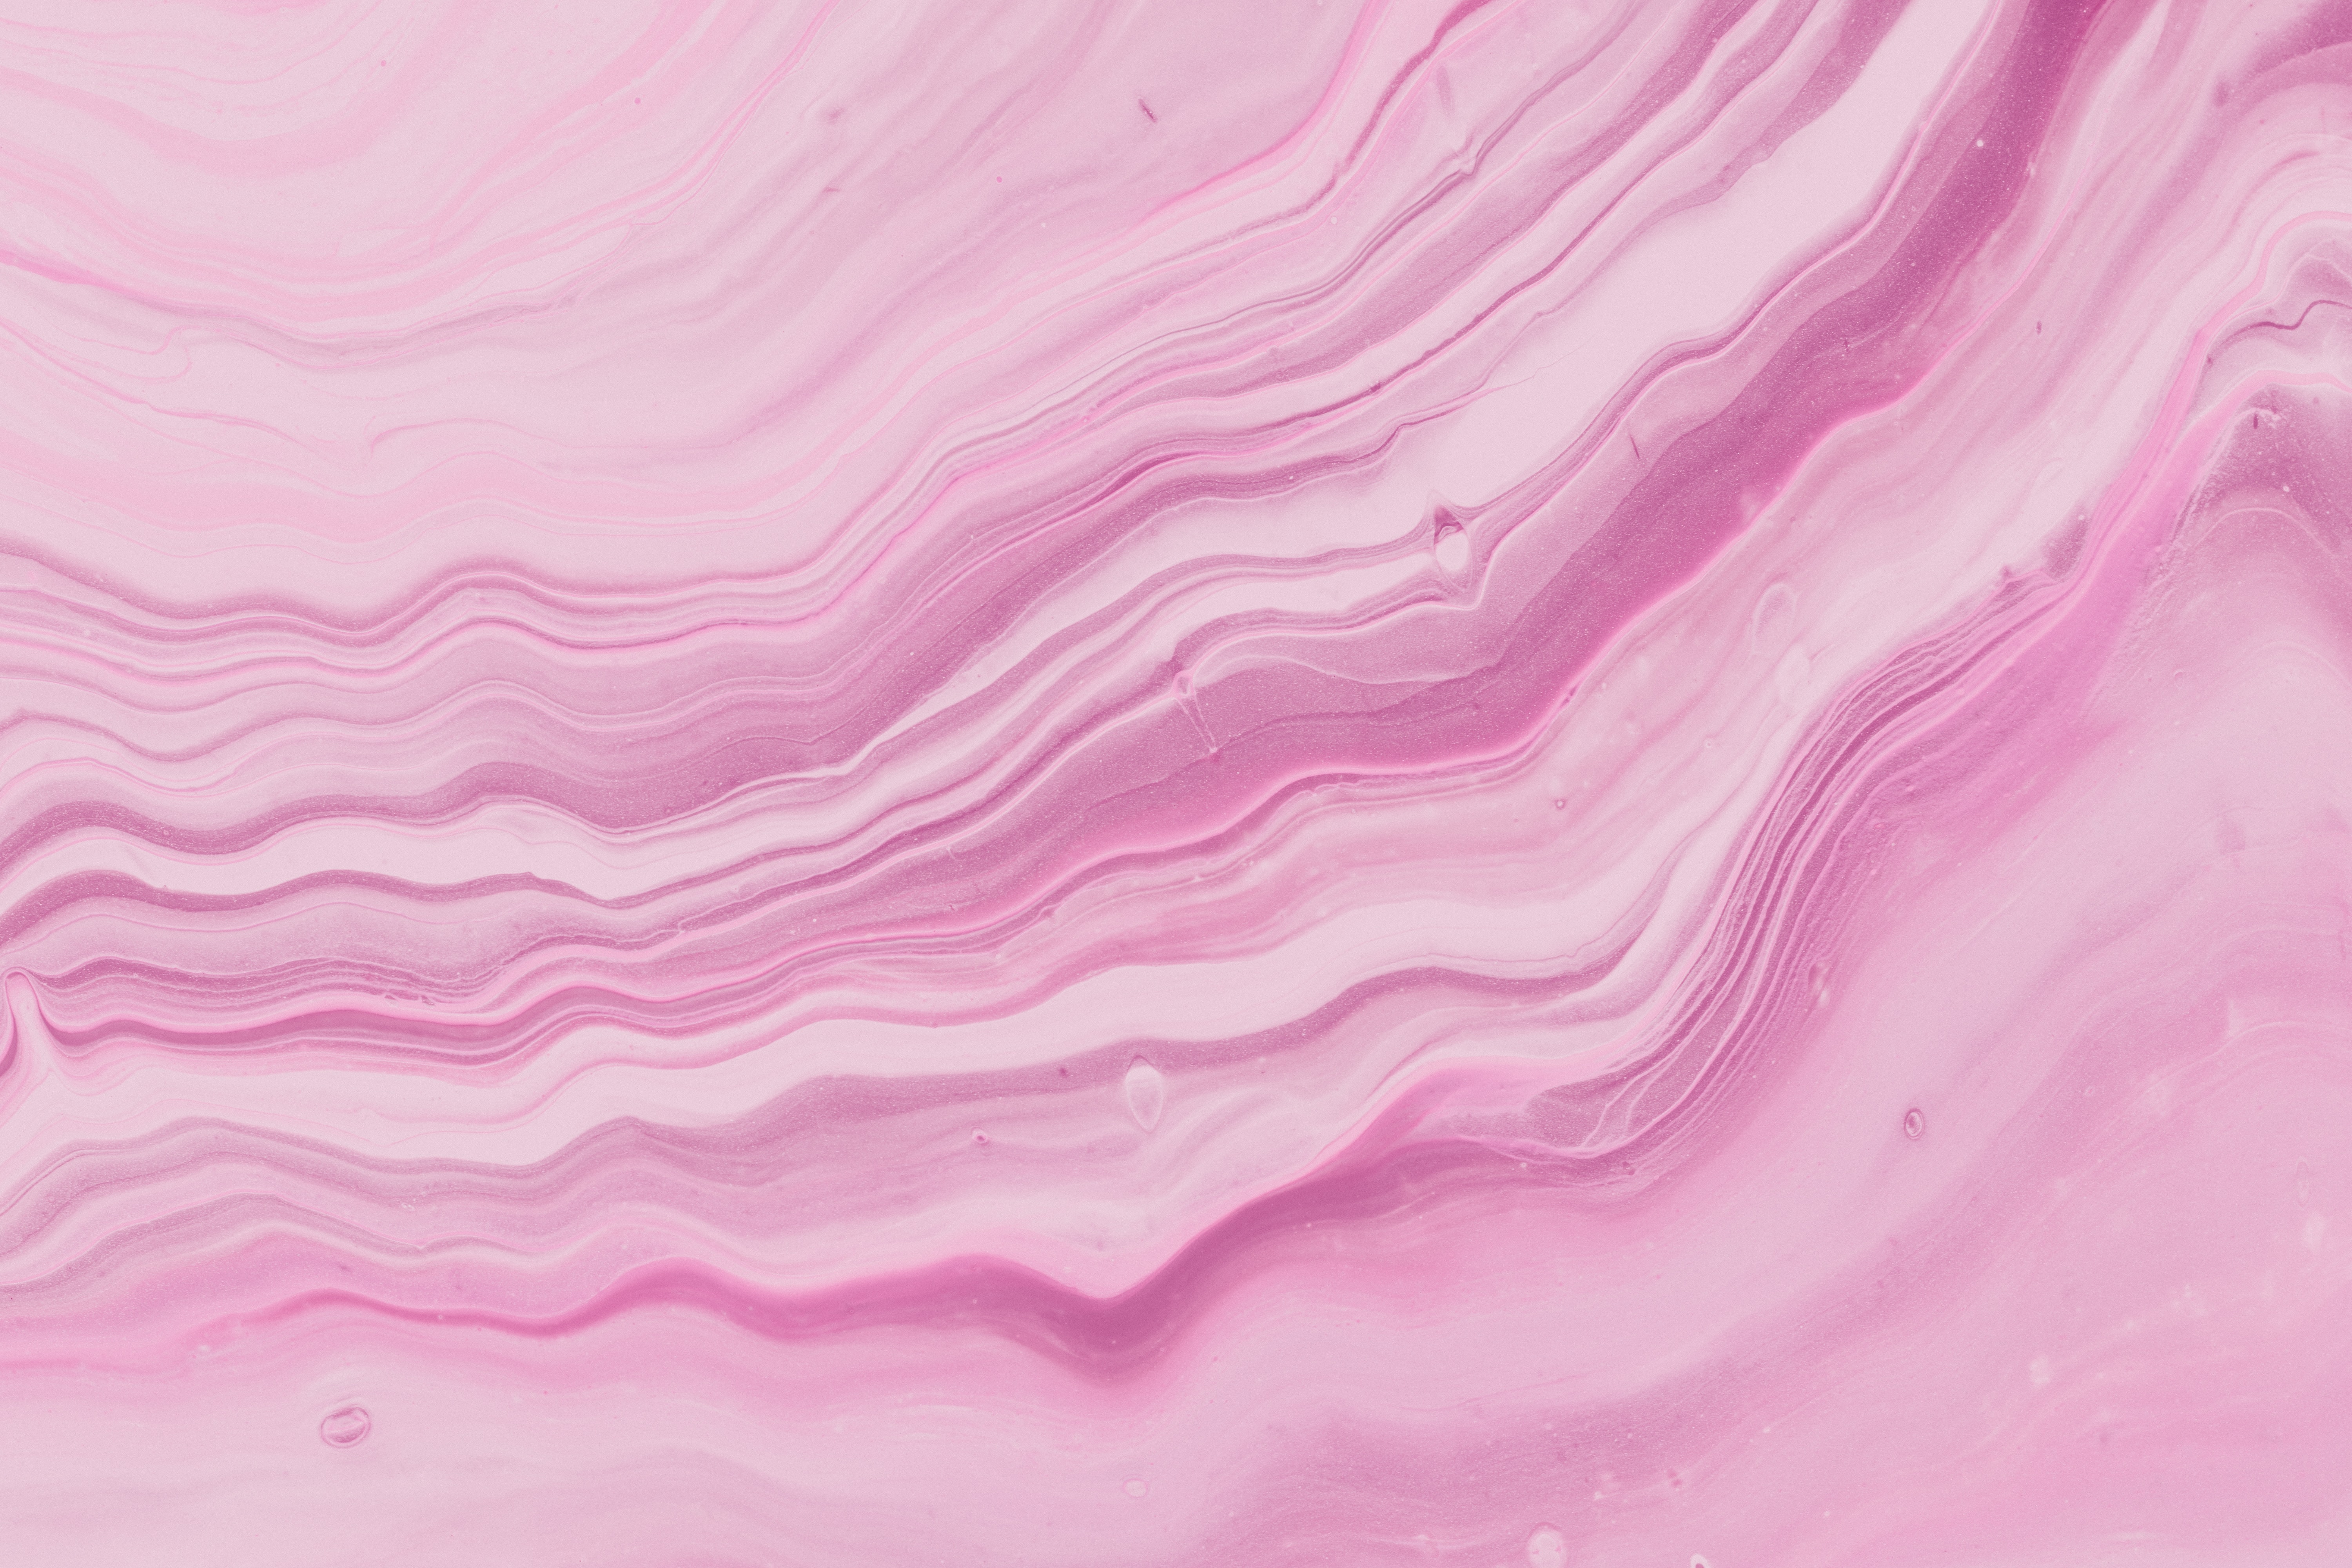 Bạn đang muốn tìm kiếm một hình nền đẹp và chất lượng cao? 4K Pink Wallpaper Background sẽ làm cho màn hình của bạn thêm phần nổi bật và cuốn hút. Với độ phân giải chất lượng cao, ảnh sẽ hiển thị rõ nét và sắc nét hơn bao giờ hết. Hãy cùng thưởng thức vẻ đẹp rực rỡ của hình nền này nhé!